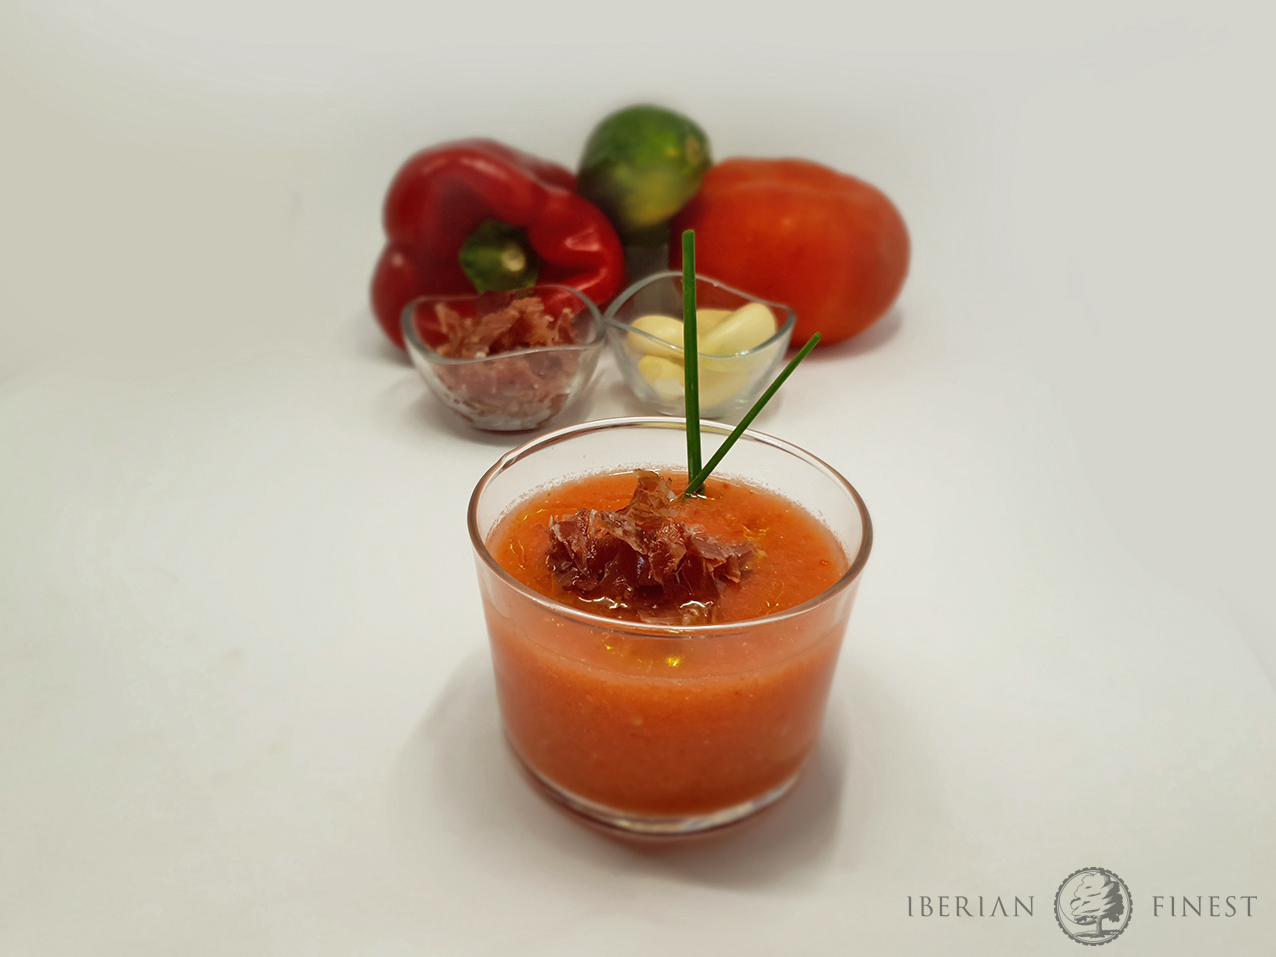 Refrescante gazpacho con virutas de jamón ibérico.